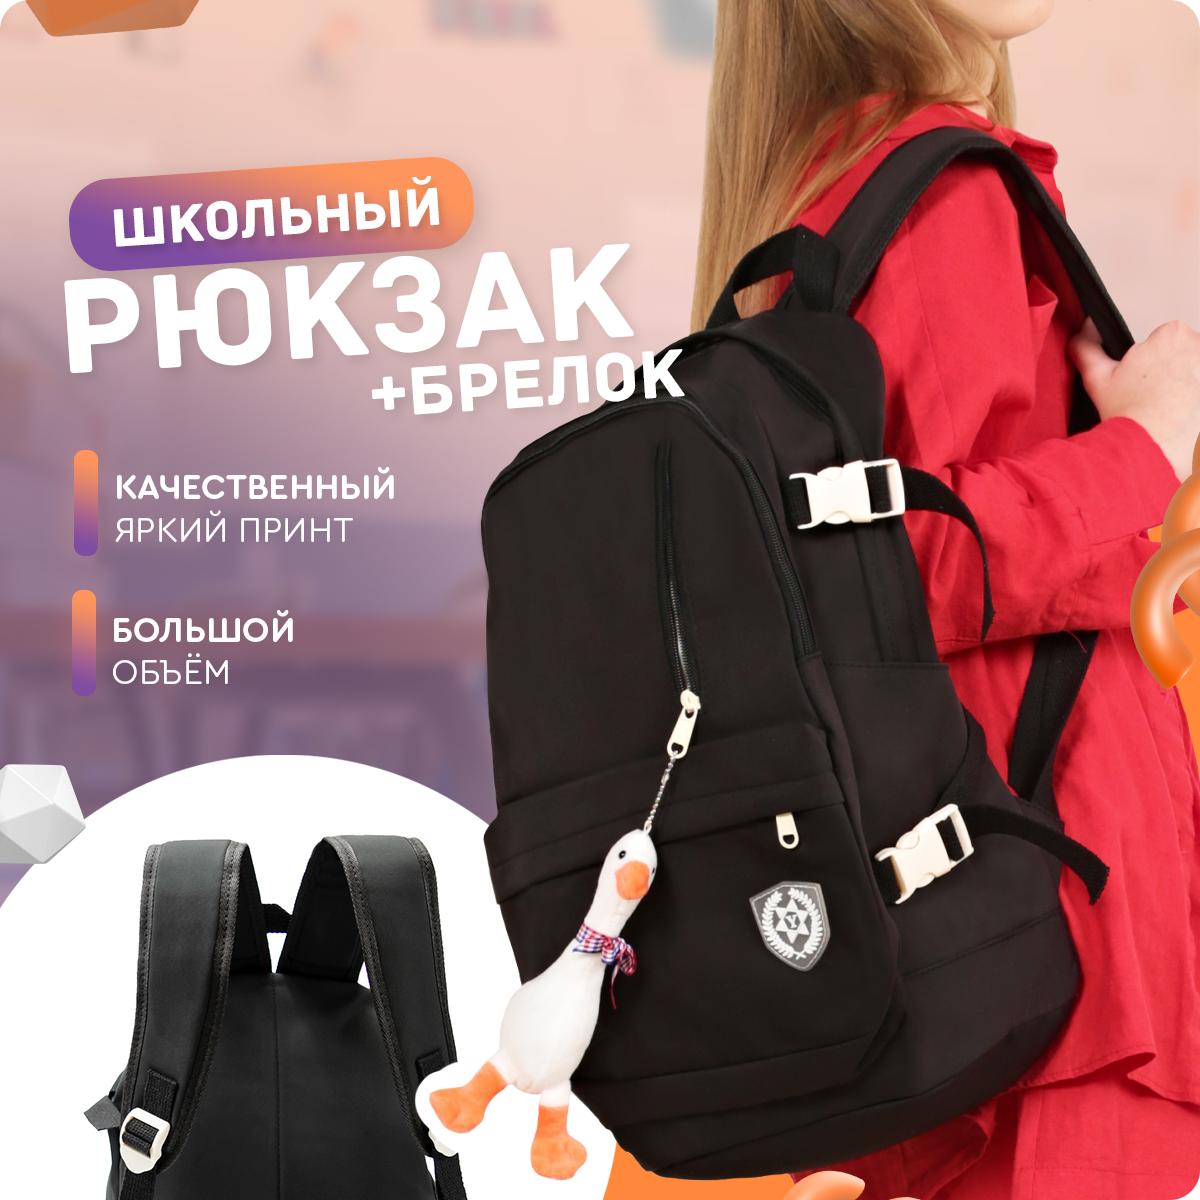 Рюкзак (с брелком) Just for fun мужской женский городской спортивный школьный повседневный офис для ноутбука туристический сумка ранец